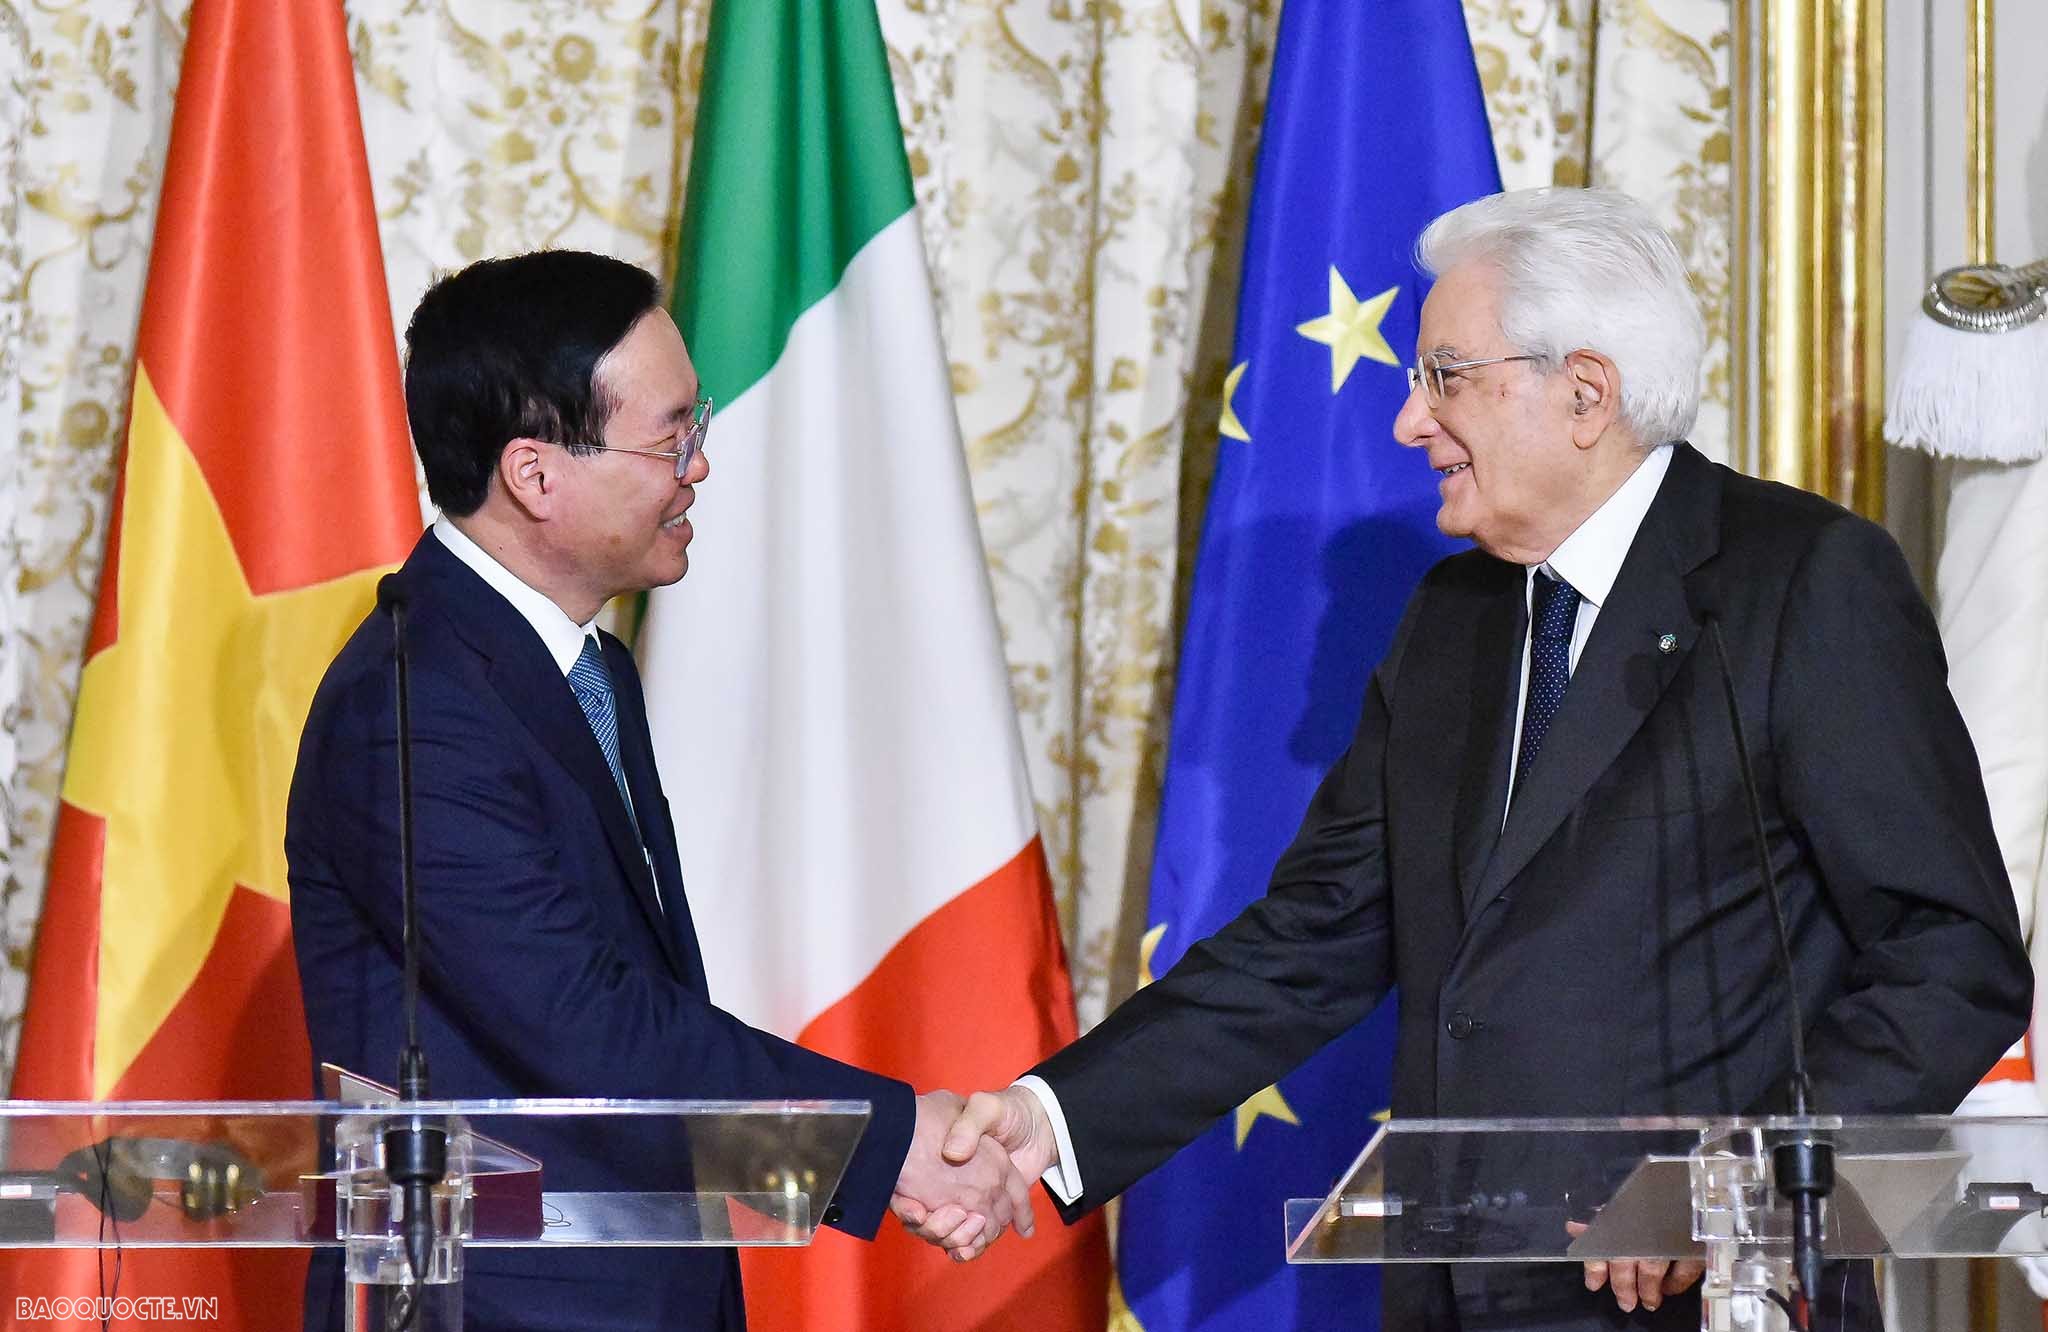 Chủ tịch nước thăm Áo, Italy và Vatican: Chuyến đi tạo động lực thúc đẩy hợp tác óng phương